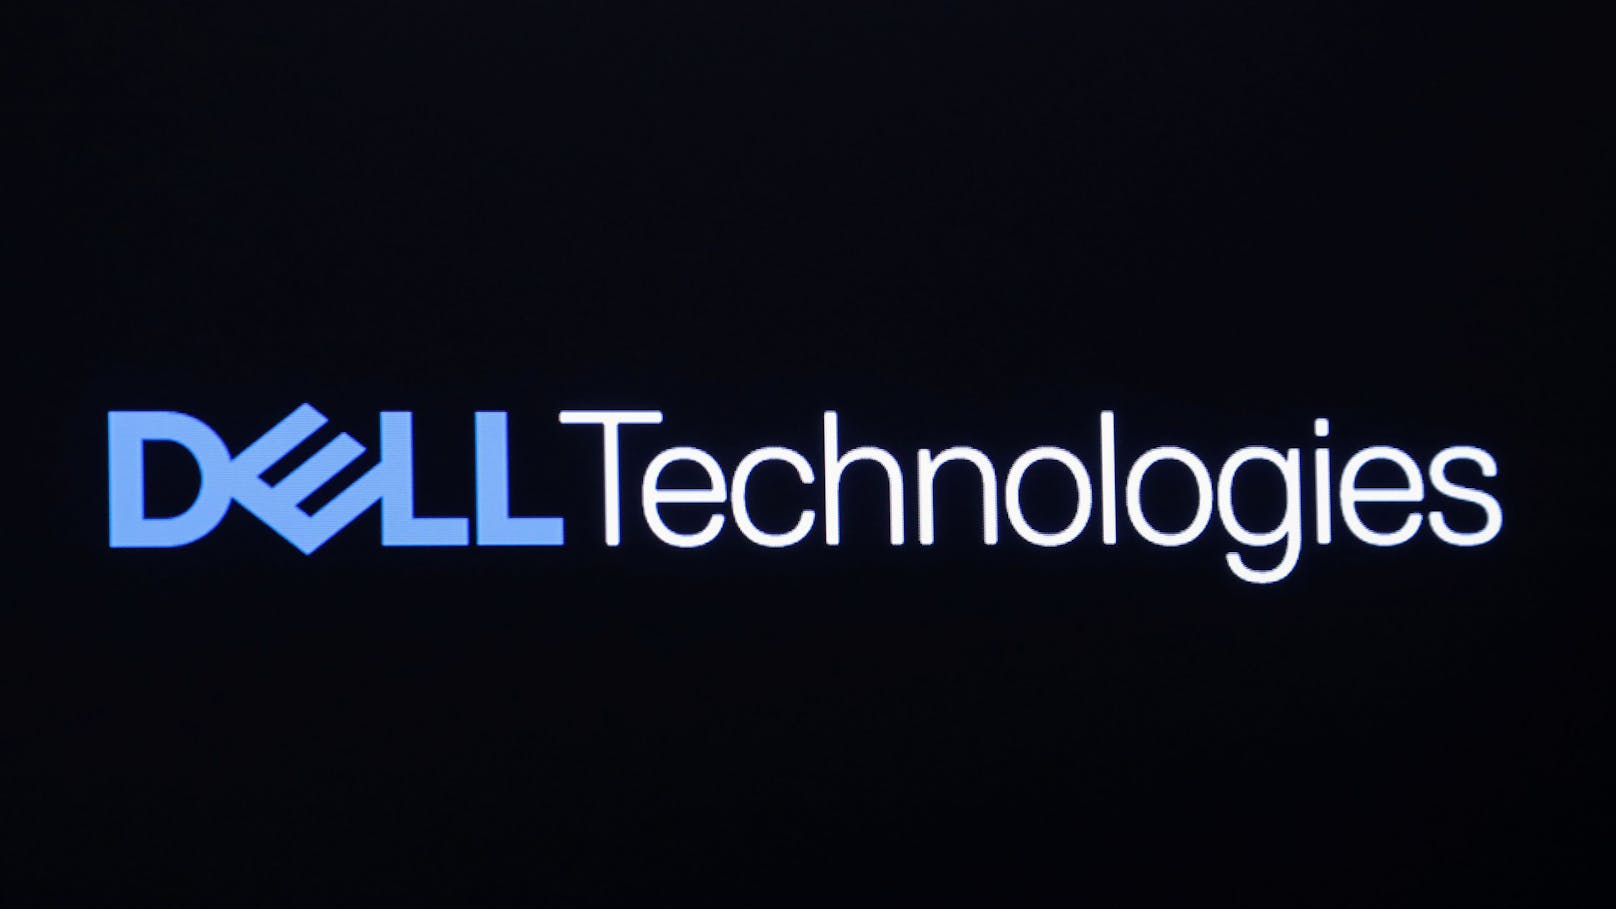 Dell Technologies ortet das Gesundheitswesen im Wandel.